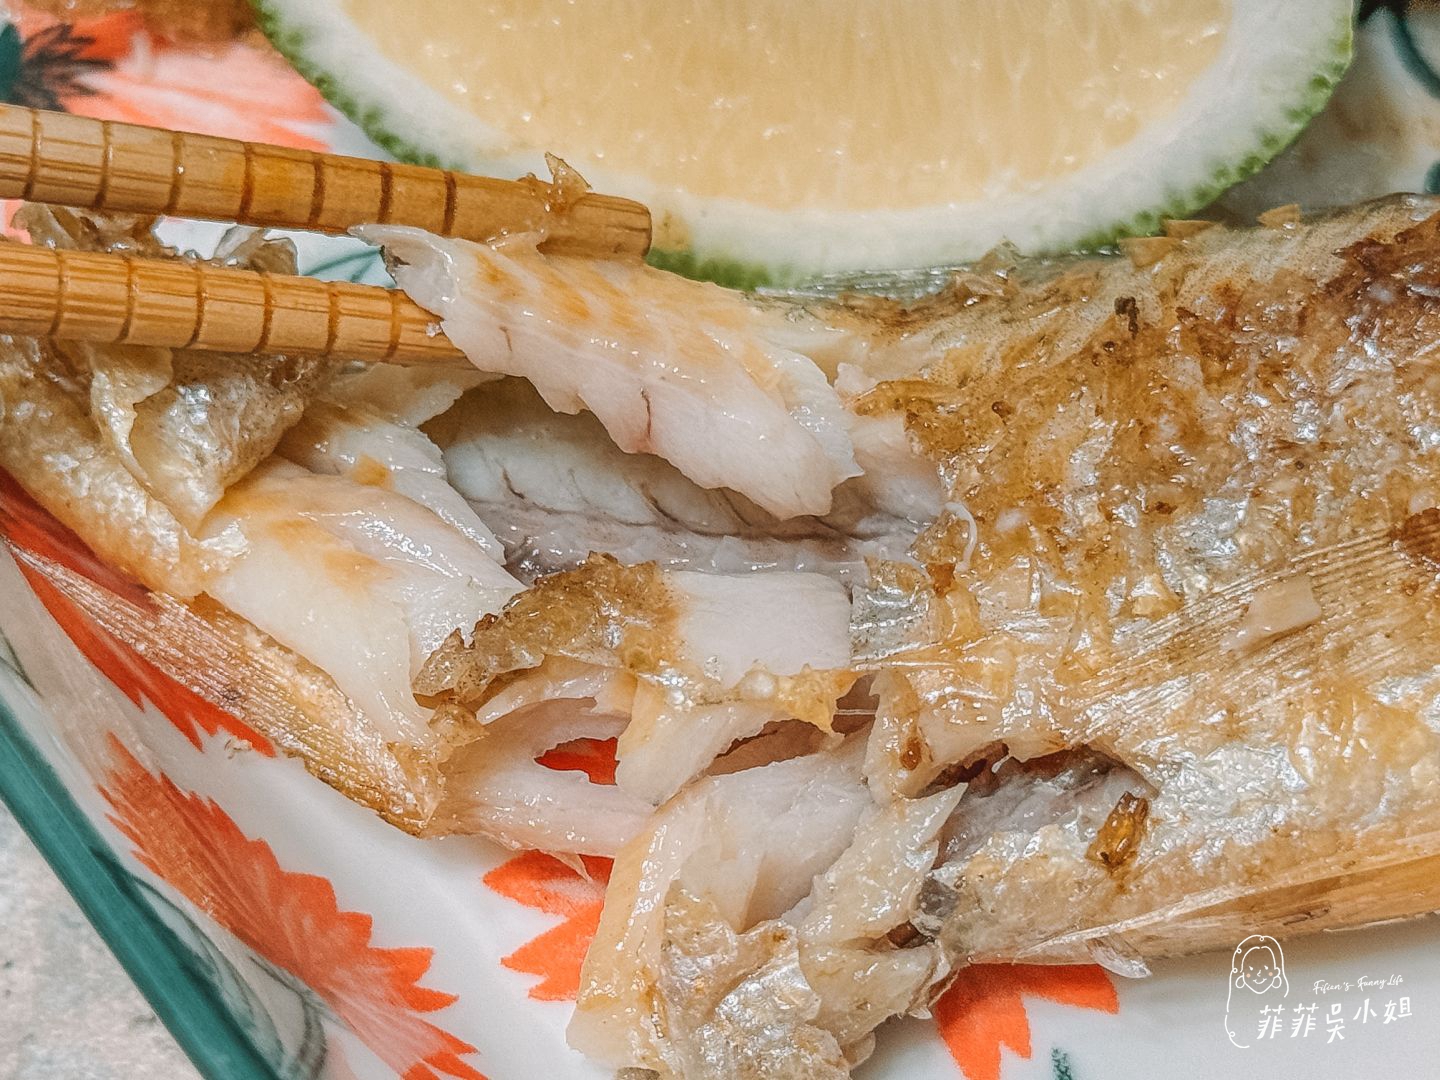 K-Seafood 韓國認證進口水產品 美味韓食一網打盡 超推韓國束草香辣炸明太魚塊 @菲菲吳小姐